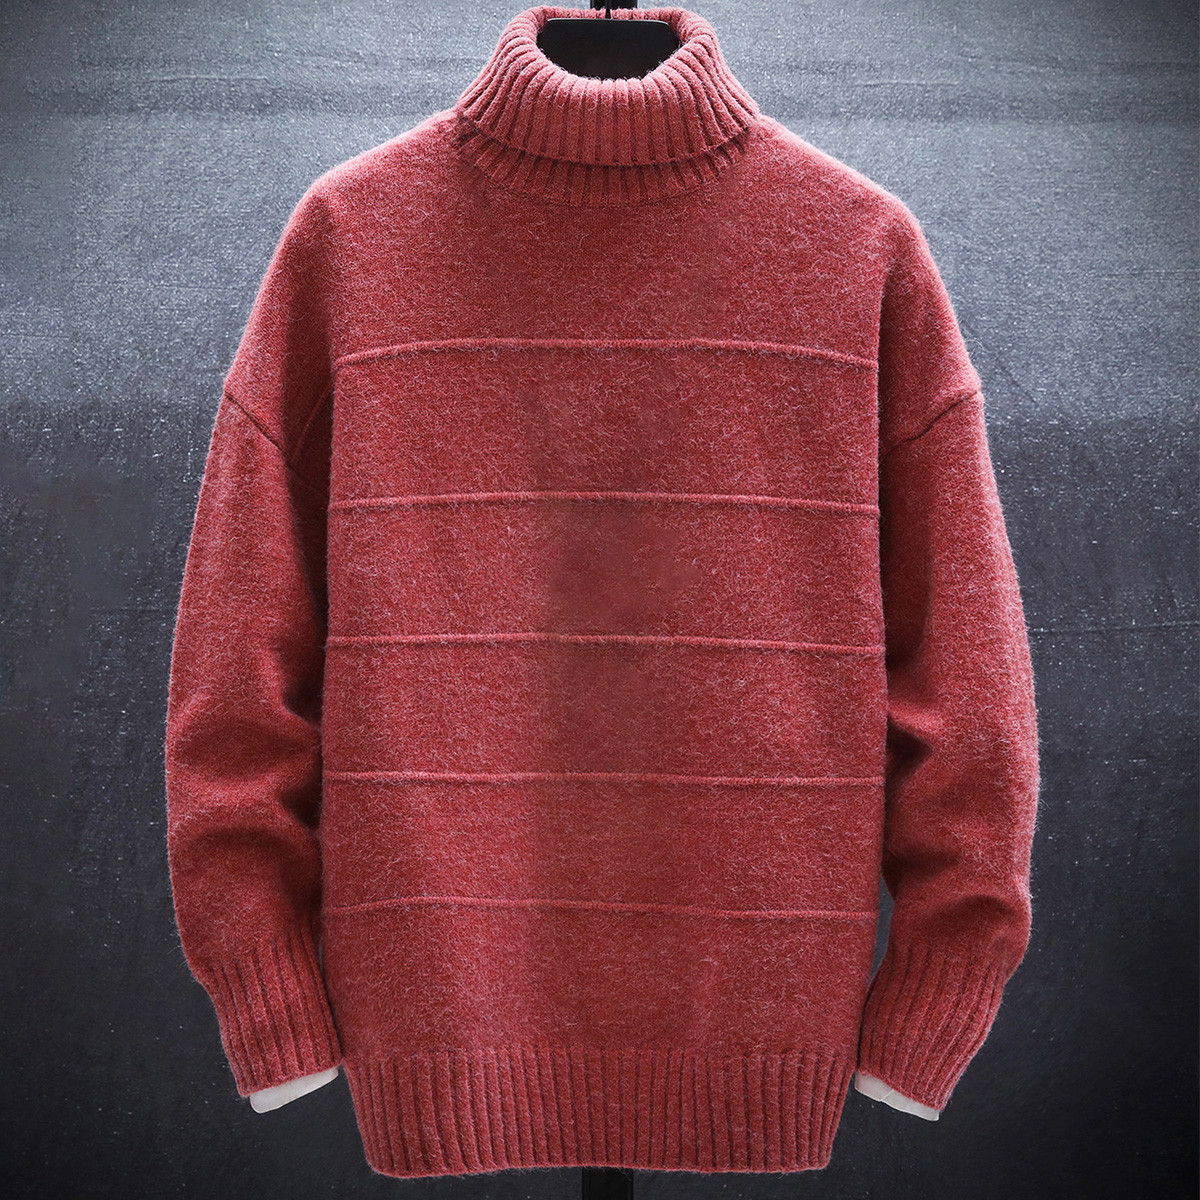 2020春季新品纯色潮流时尚高领男士毛衣针织衫